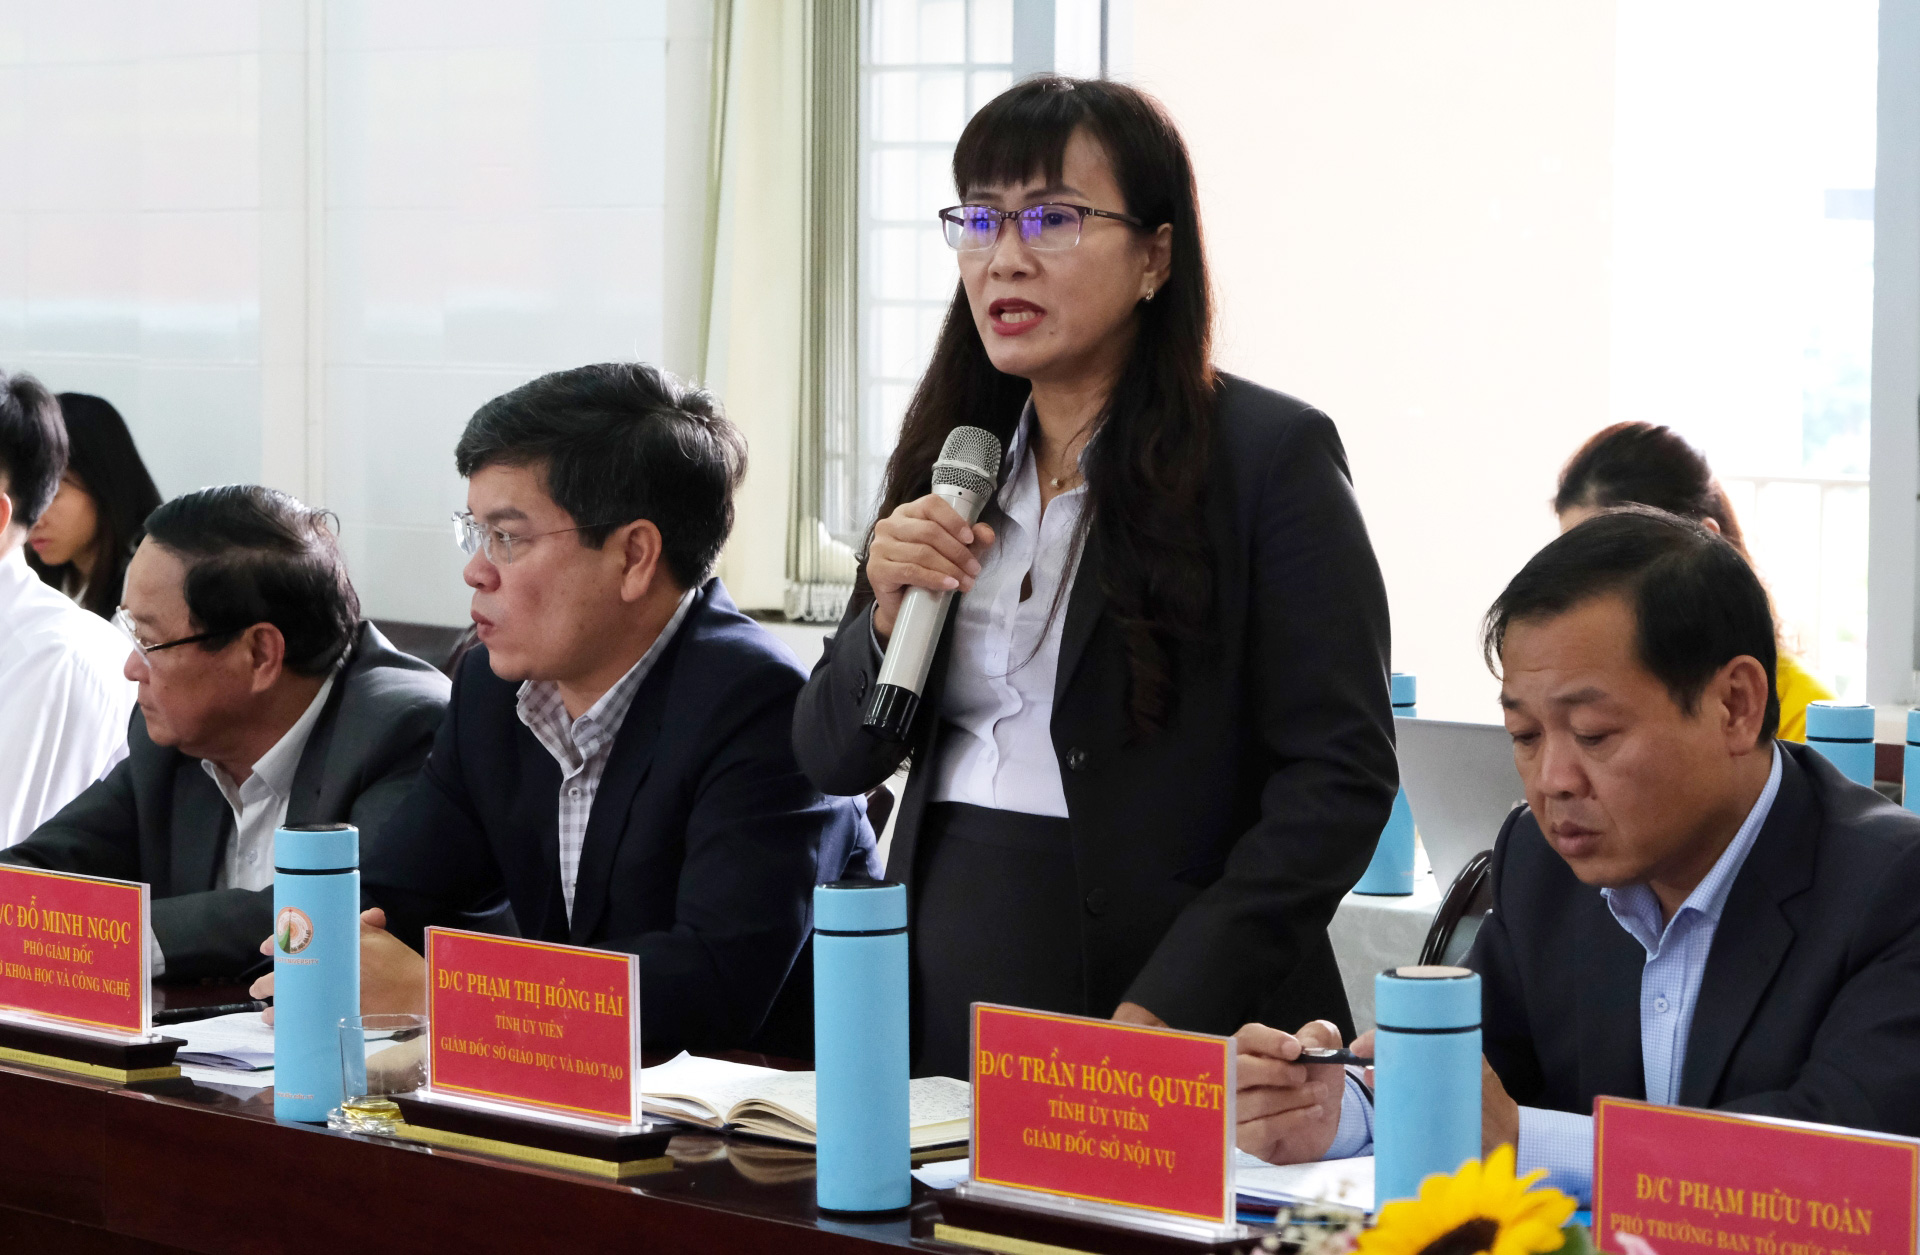 Giám đốc Sở Giáo dục và Đào tạo Phạm Thị Hồng Hải nêu ý kiến về công tác đào tạo chuyên môn đối với sinh viên ngành sư phạm